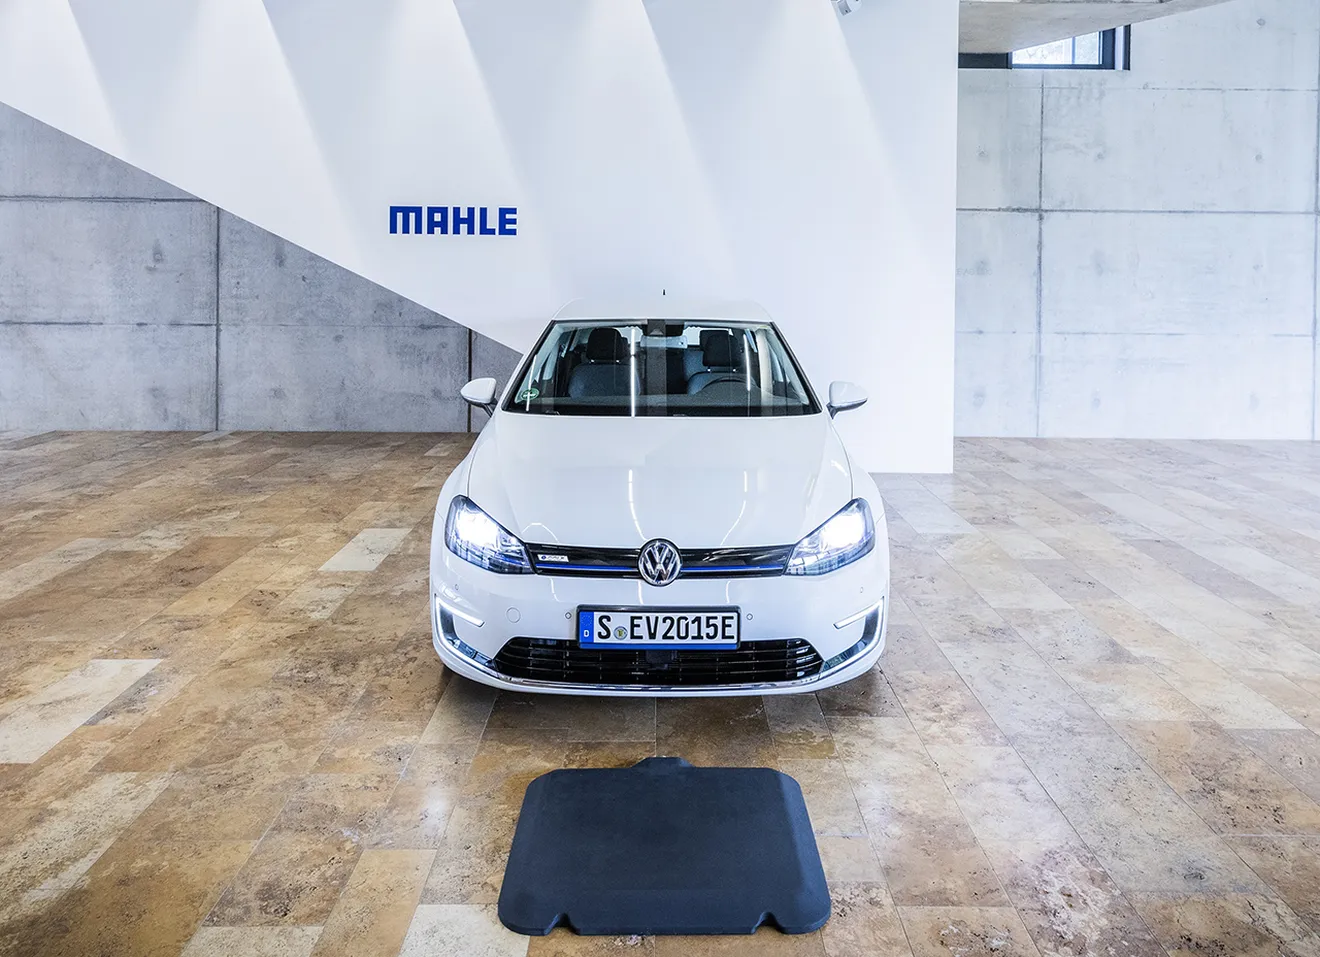 MAHLE y Siemens se lanzan a la carga inductiva para coches eléctricos